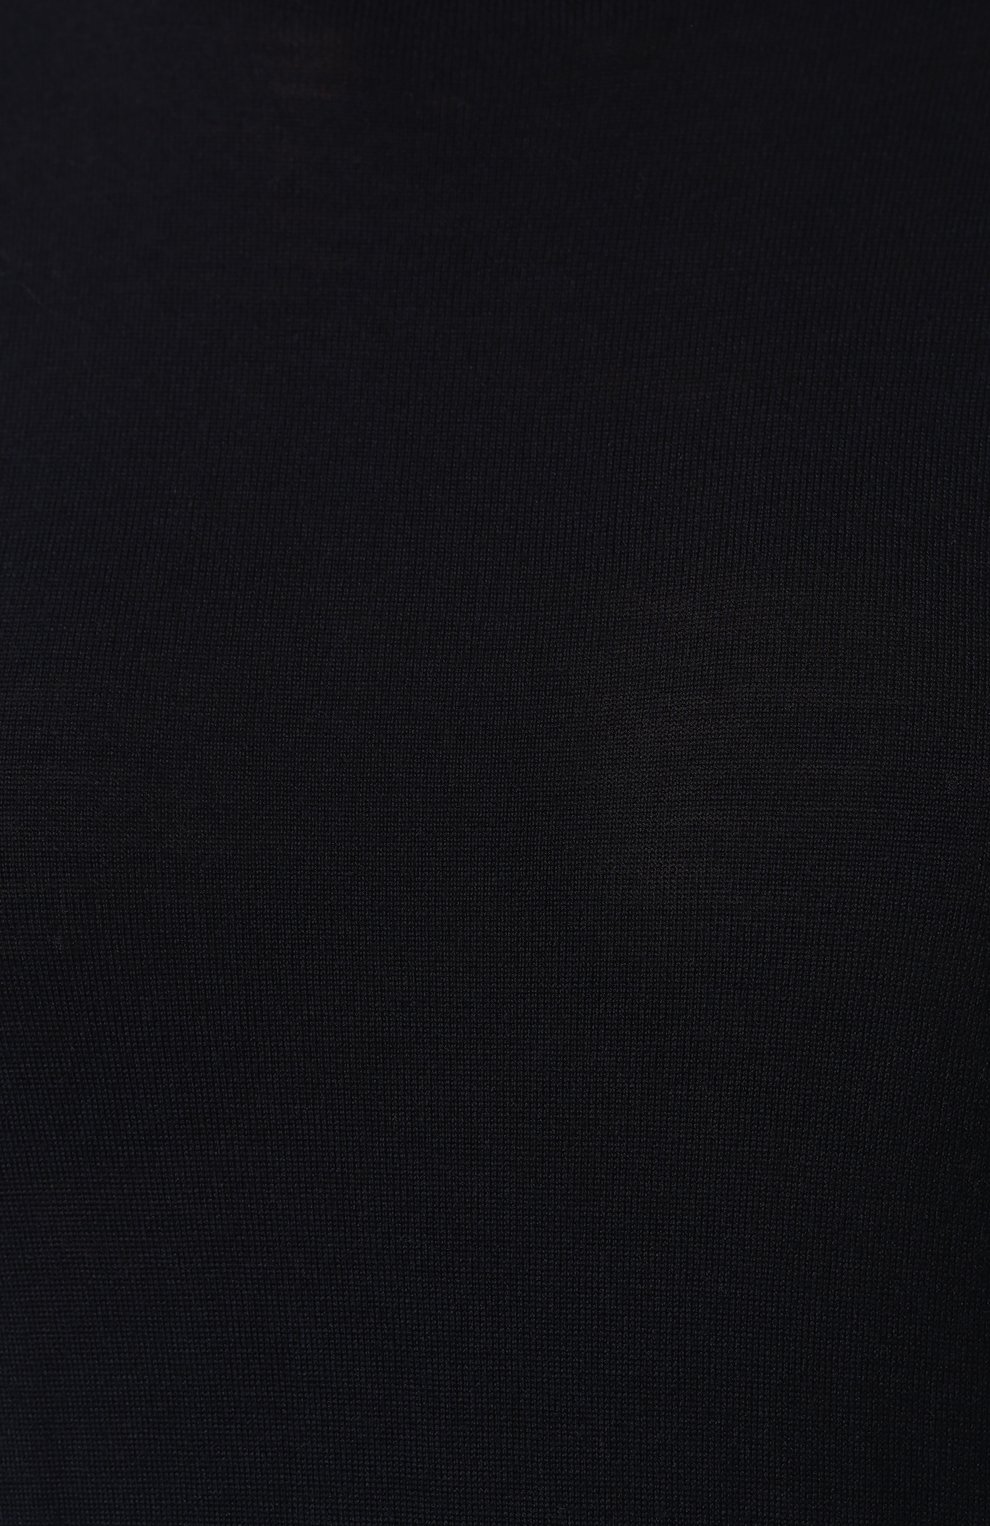 Женский шерстяной пуловер STELLA MCCARTNEY темно-синего цвета, арт. 322182/S1735 | Фото 5 (Материал внешний: Шерсть; Рукава: Длинные; Длина (для топов): Стандартные; Стили: Классический, Минимализм, Кэжуэл; Статус проверки: Проверено, Проверена категория; Женское Кросс-КТ: Пуловер-одежда)